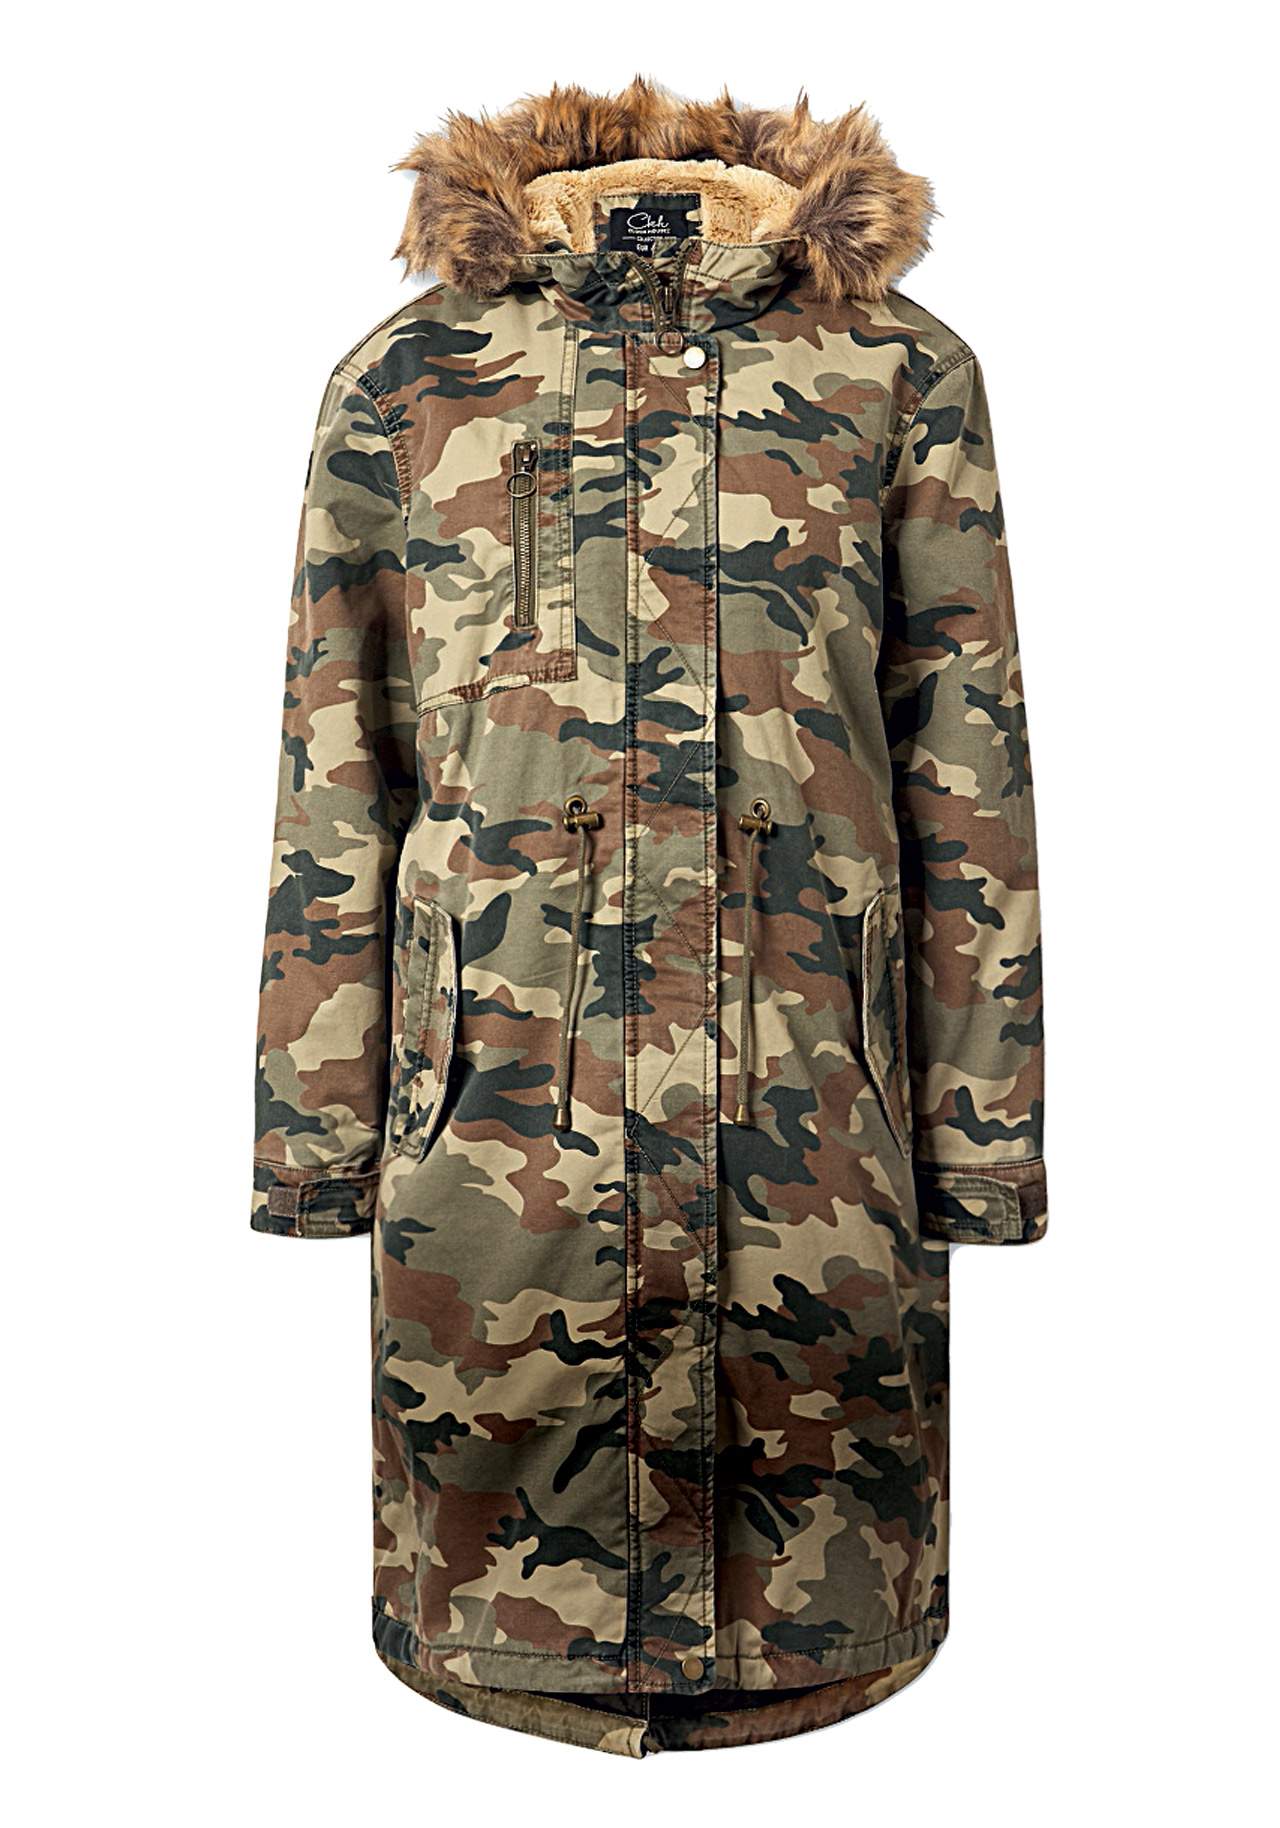 Estilo militar: capucha peluda abrigos gustosos Camuflaje, de C&A, 49,90€